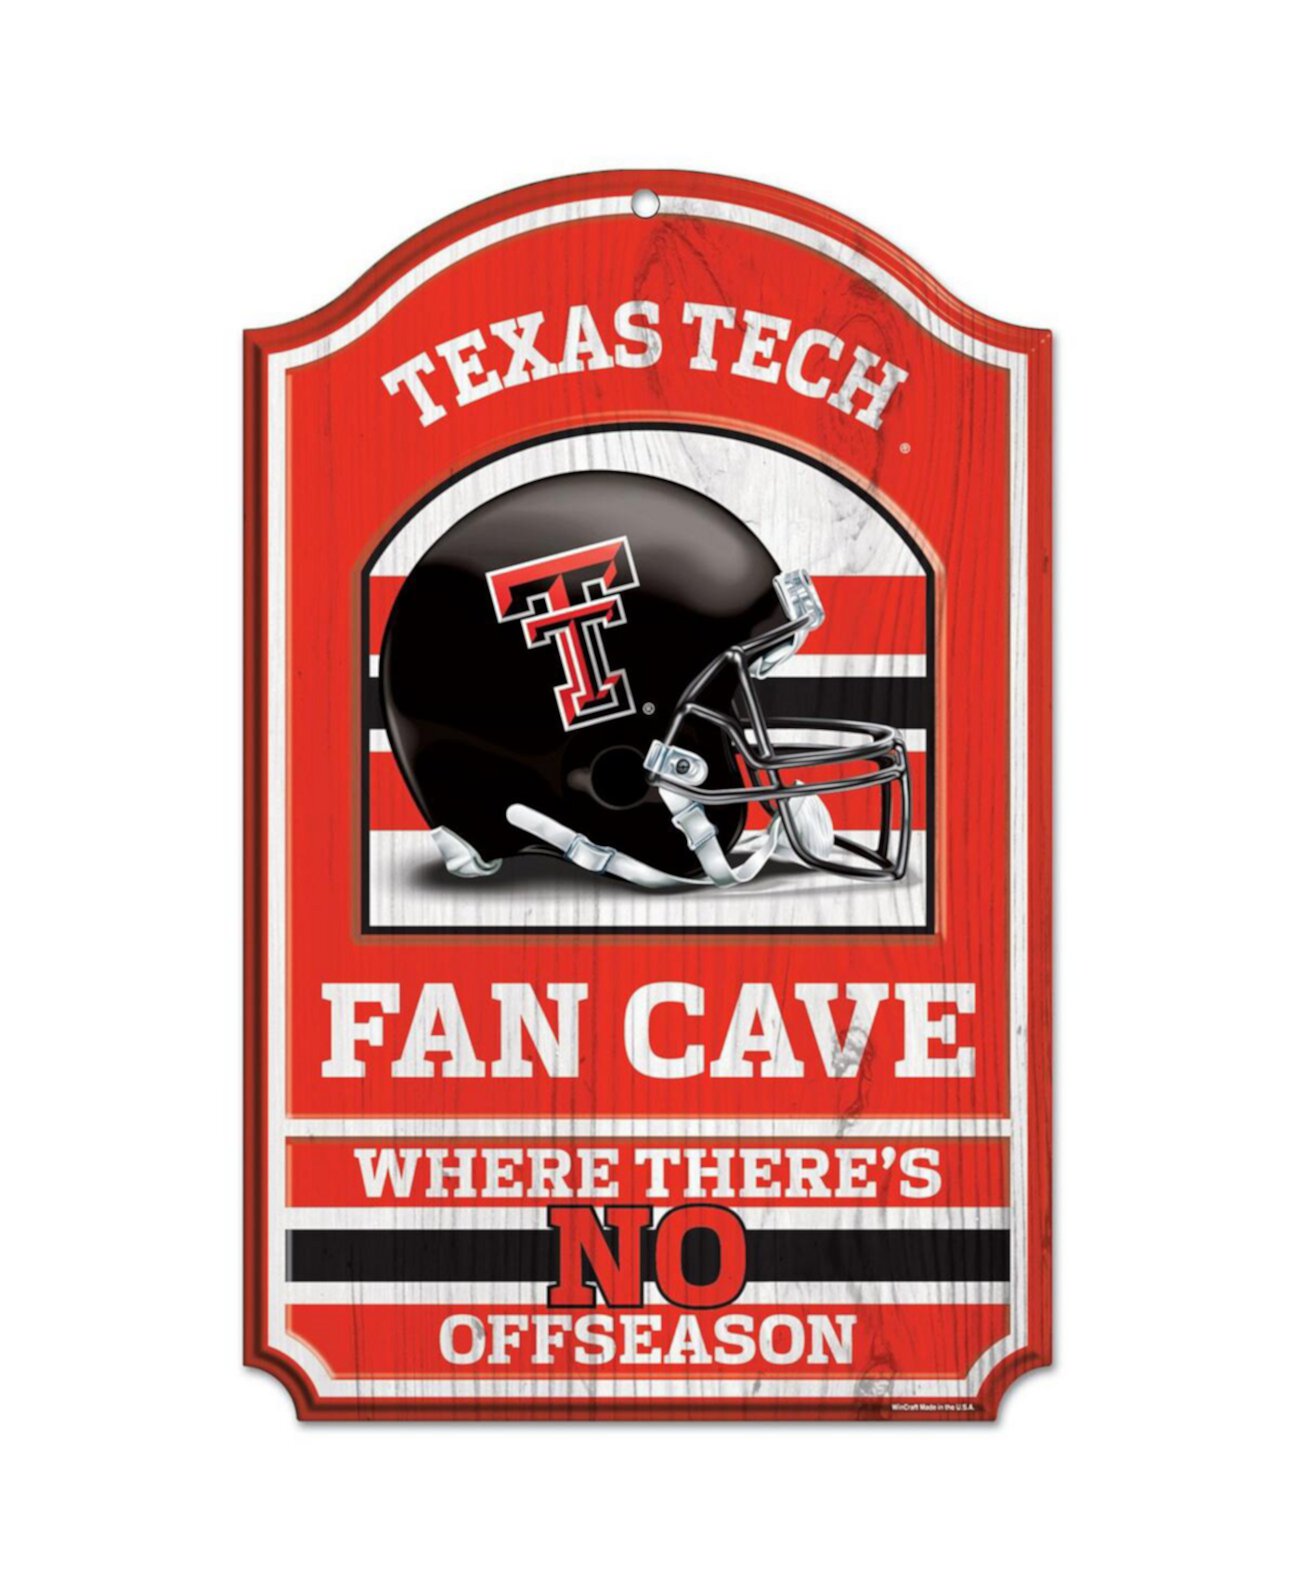 Деревянная вывеска Fan Cave Texas Tech Red Raiders размером 11 x 17 дюймов Wincraft